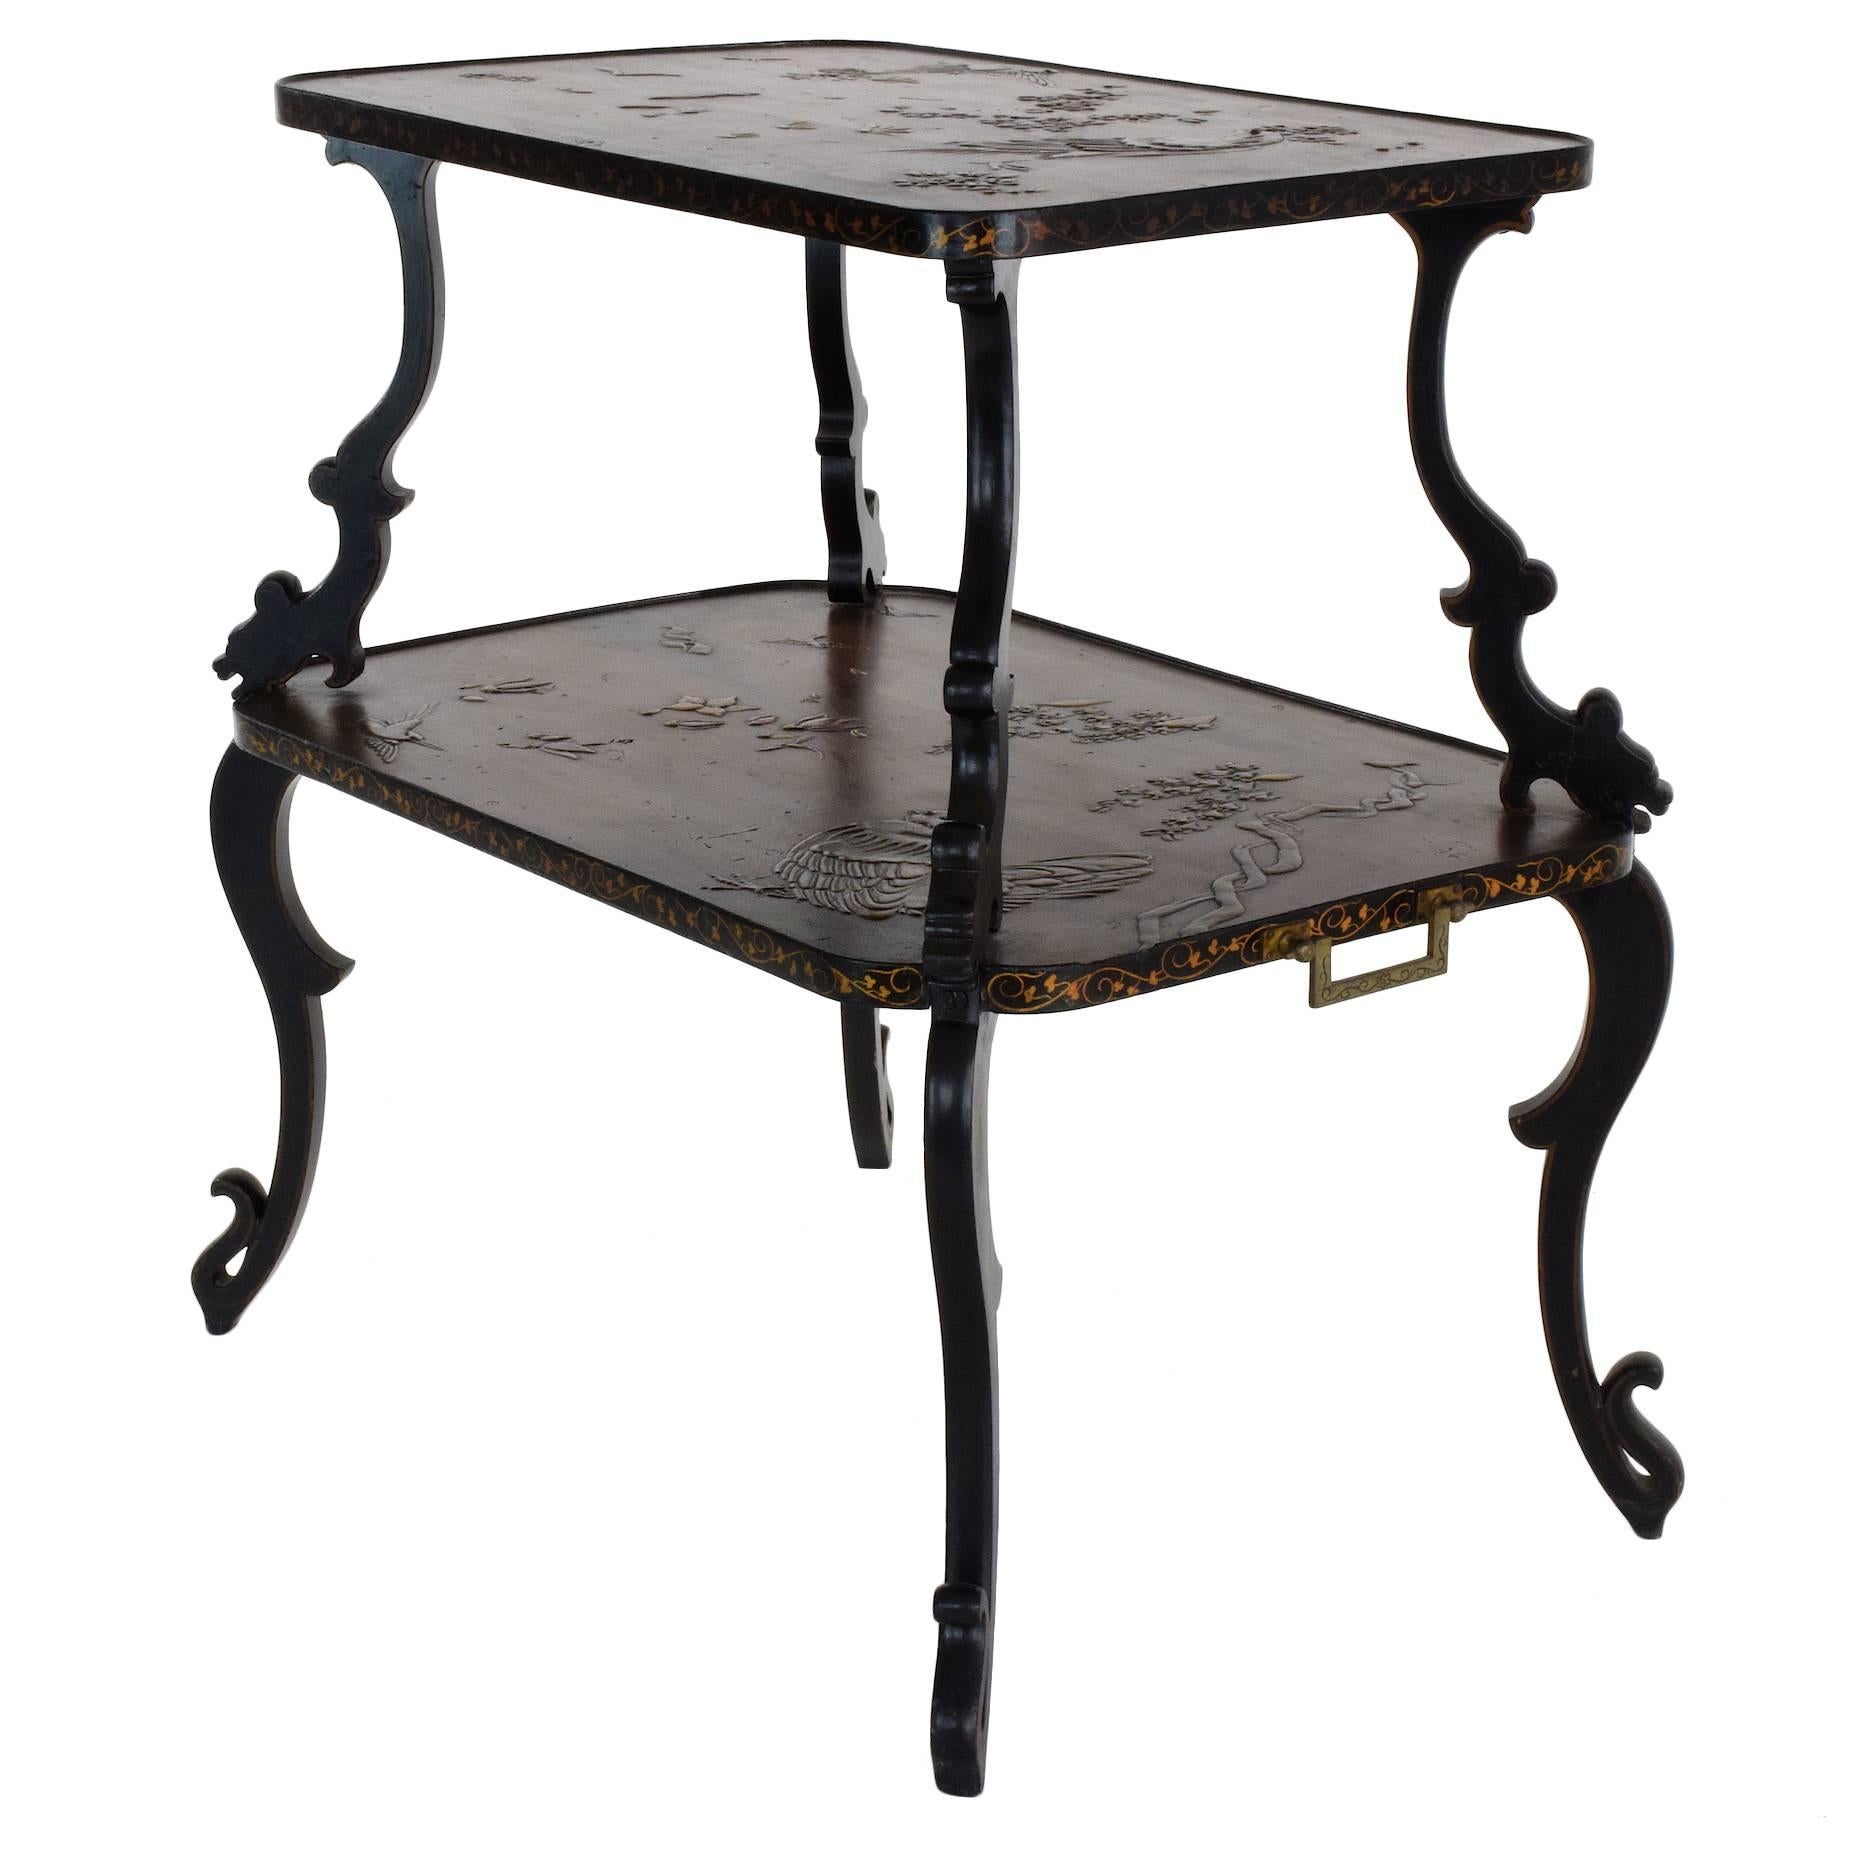 Antique French Art Nouveau Table by Louis Majorelle